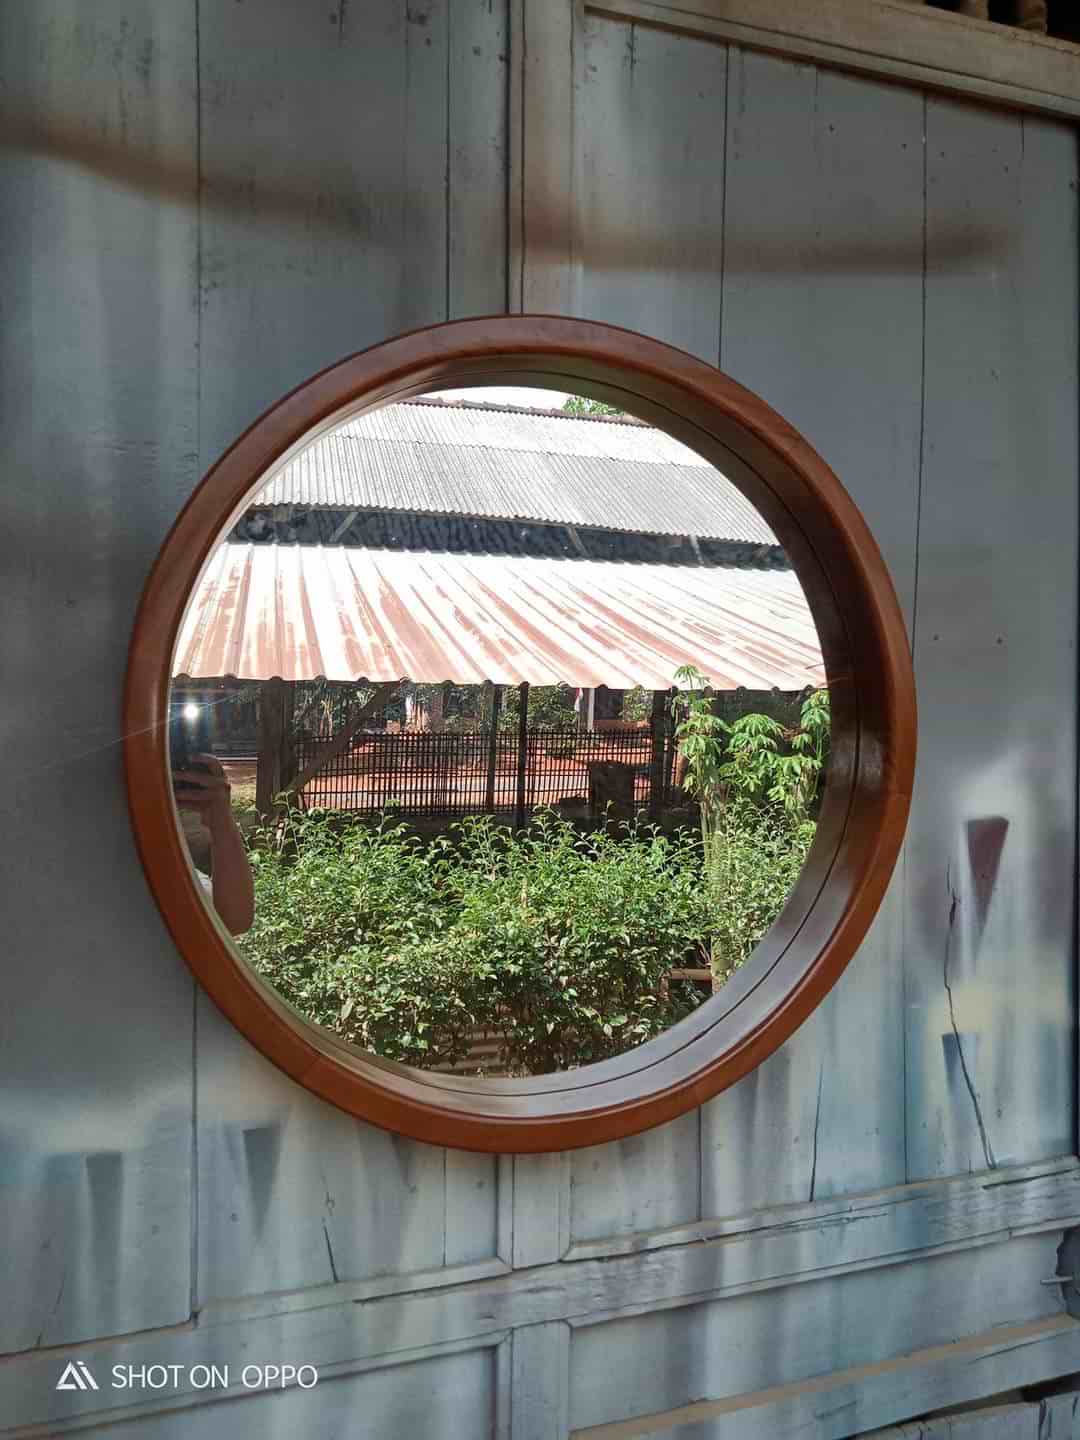 Cermin hias terbaru kayu jati